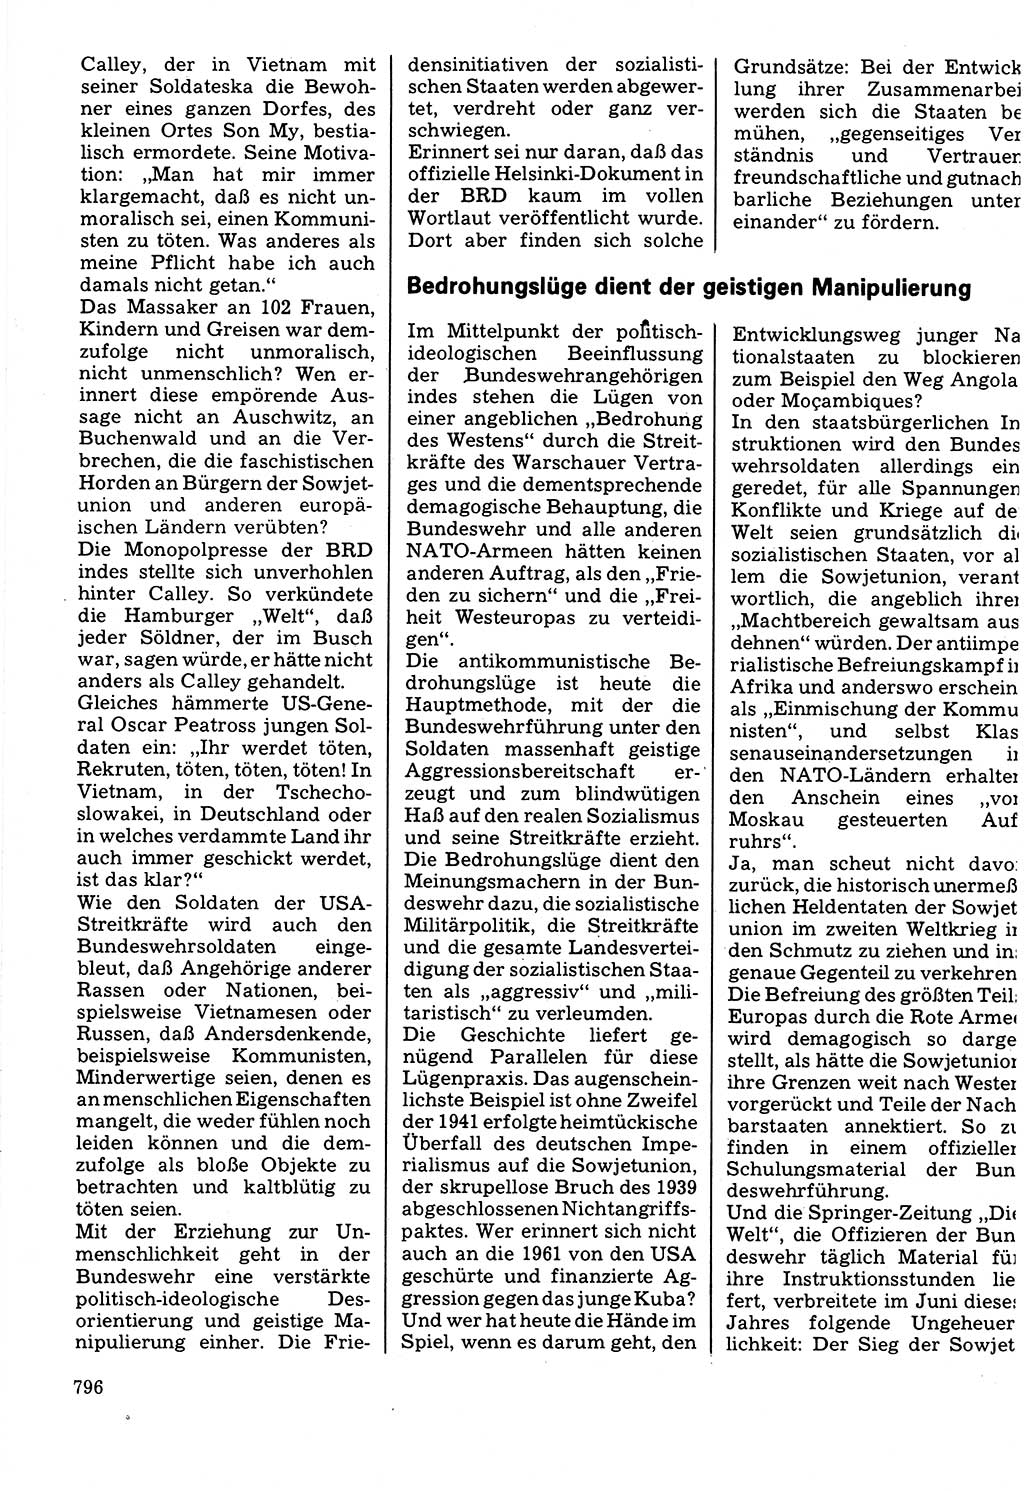 Neuer Weg (NW), Organ des Zentralkomitees (ZK) der SED (Sozialistische Einheitspartei Deutschlands) für Fragen des Parteilebens, 32. Jahrgang [Deutsche Demokratische Republik (DDR)] 1977, Seite 796 (NW ZK SED DDR 1977, S. 796)